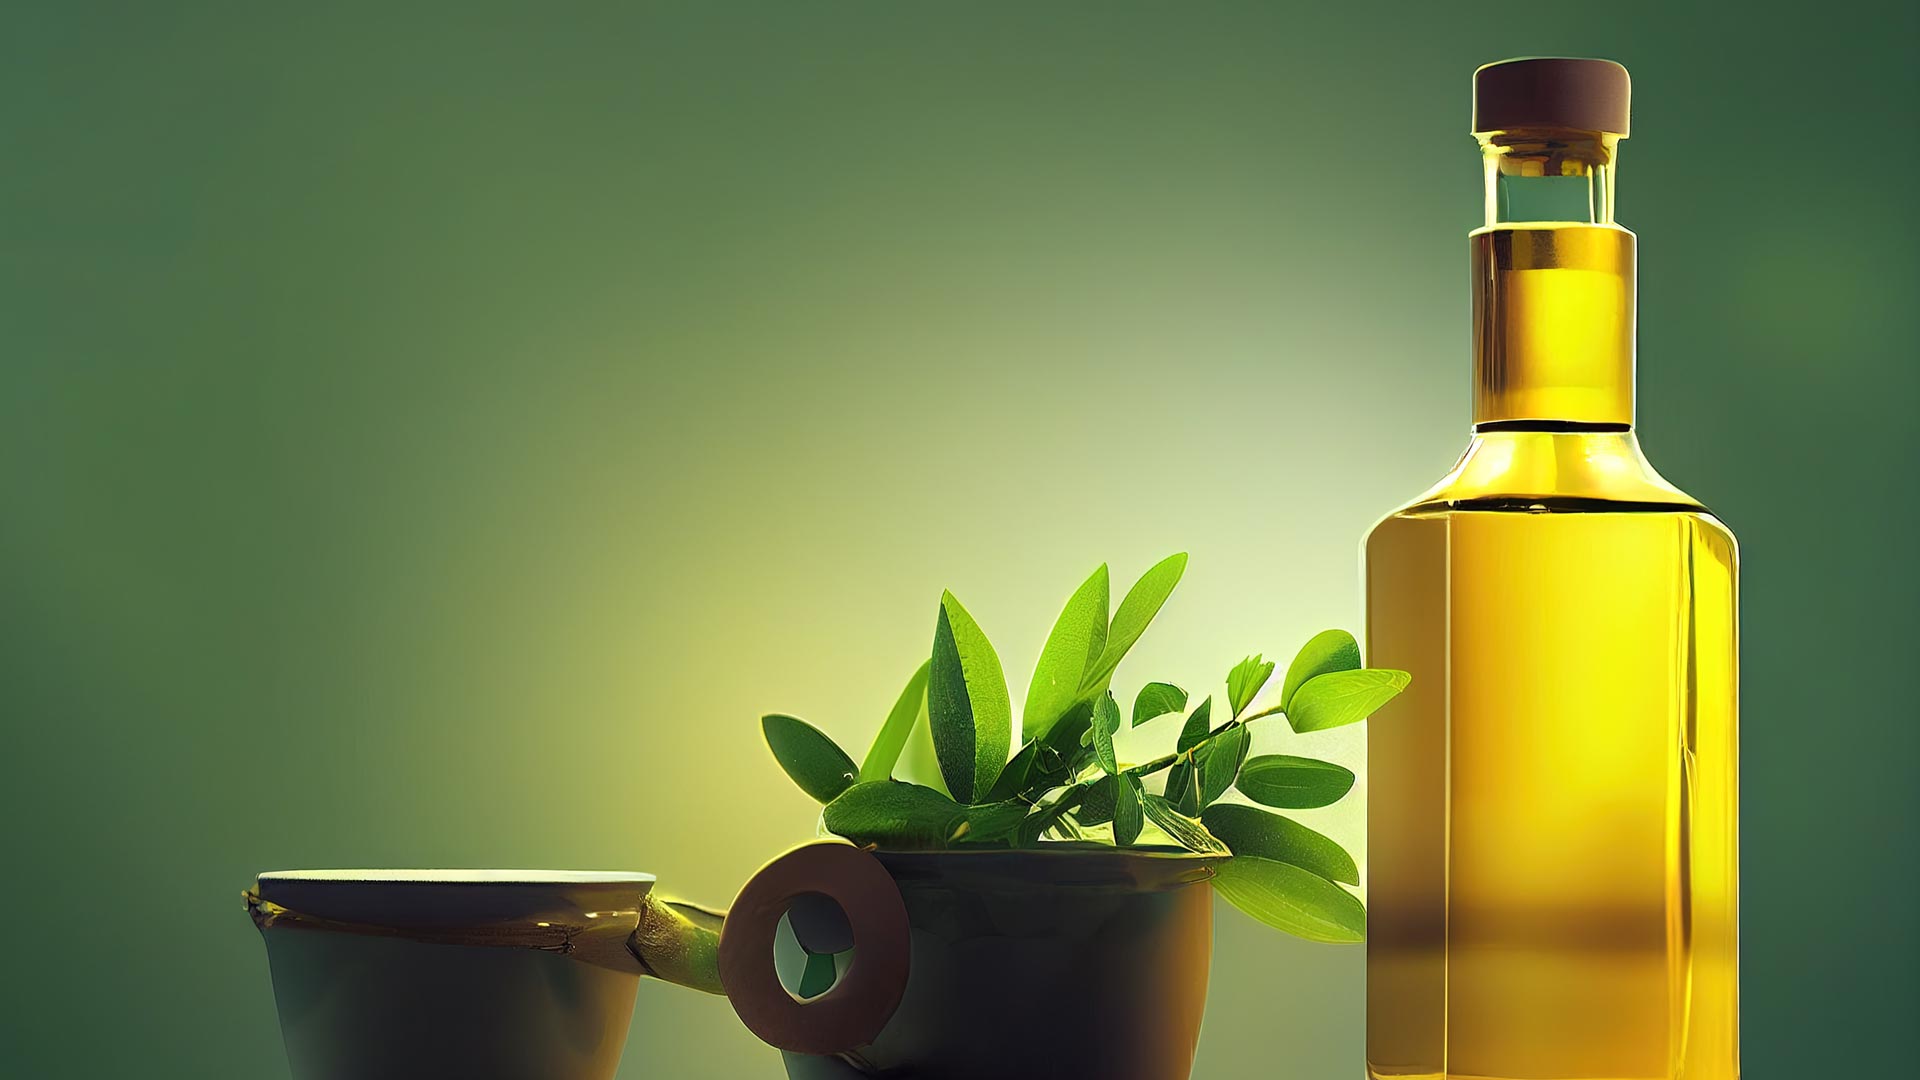 Création de packagings et d'étiquettes pour les bouteilles d'huile d'olive de la marque Olio Vitalo.